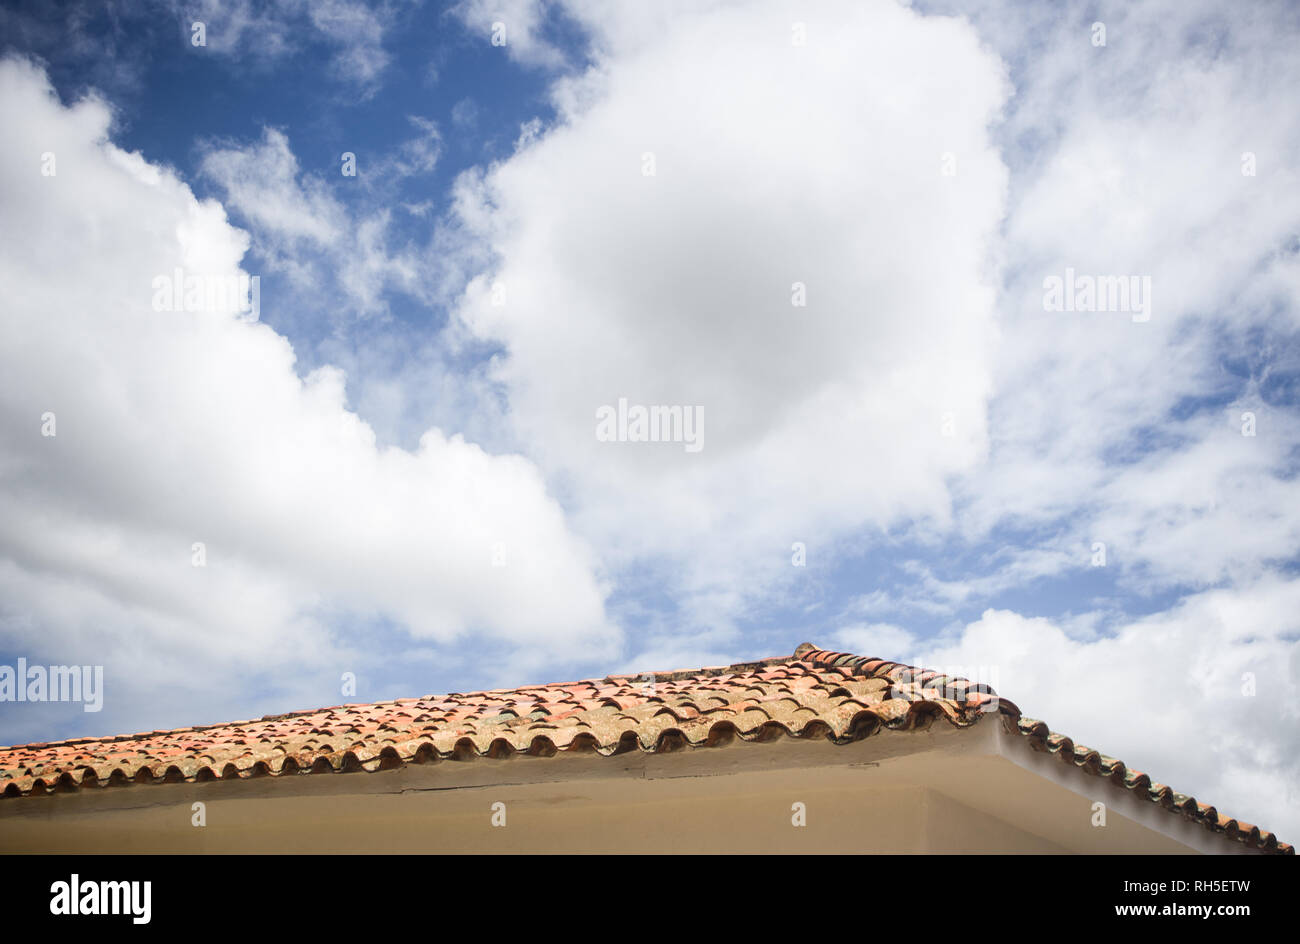 Nuvoloso blu cielo creando lo spazio negativo per copiare su un tipico in piastrelle di terracotta tetto di una casa bianca in Villa de Leyva, Colombia Foto Stock